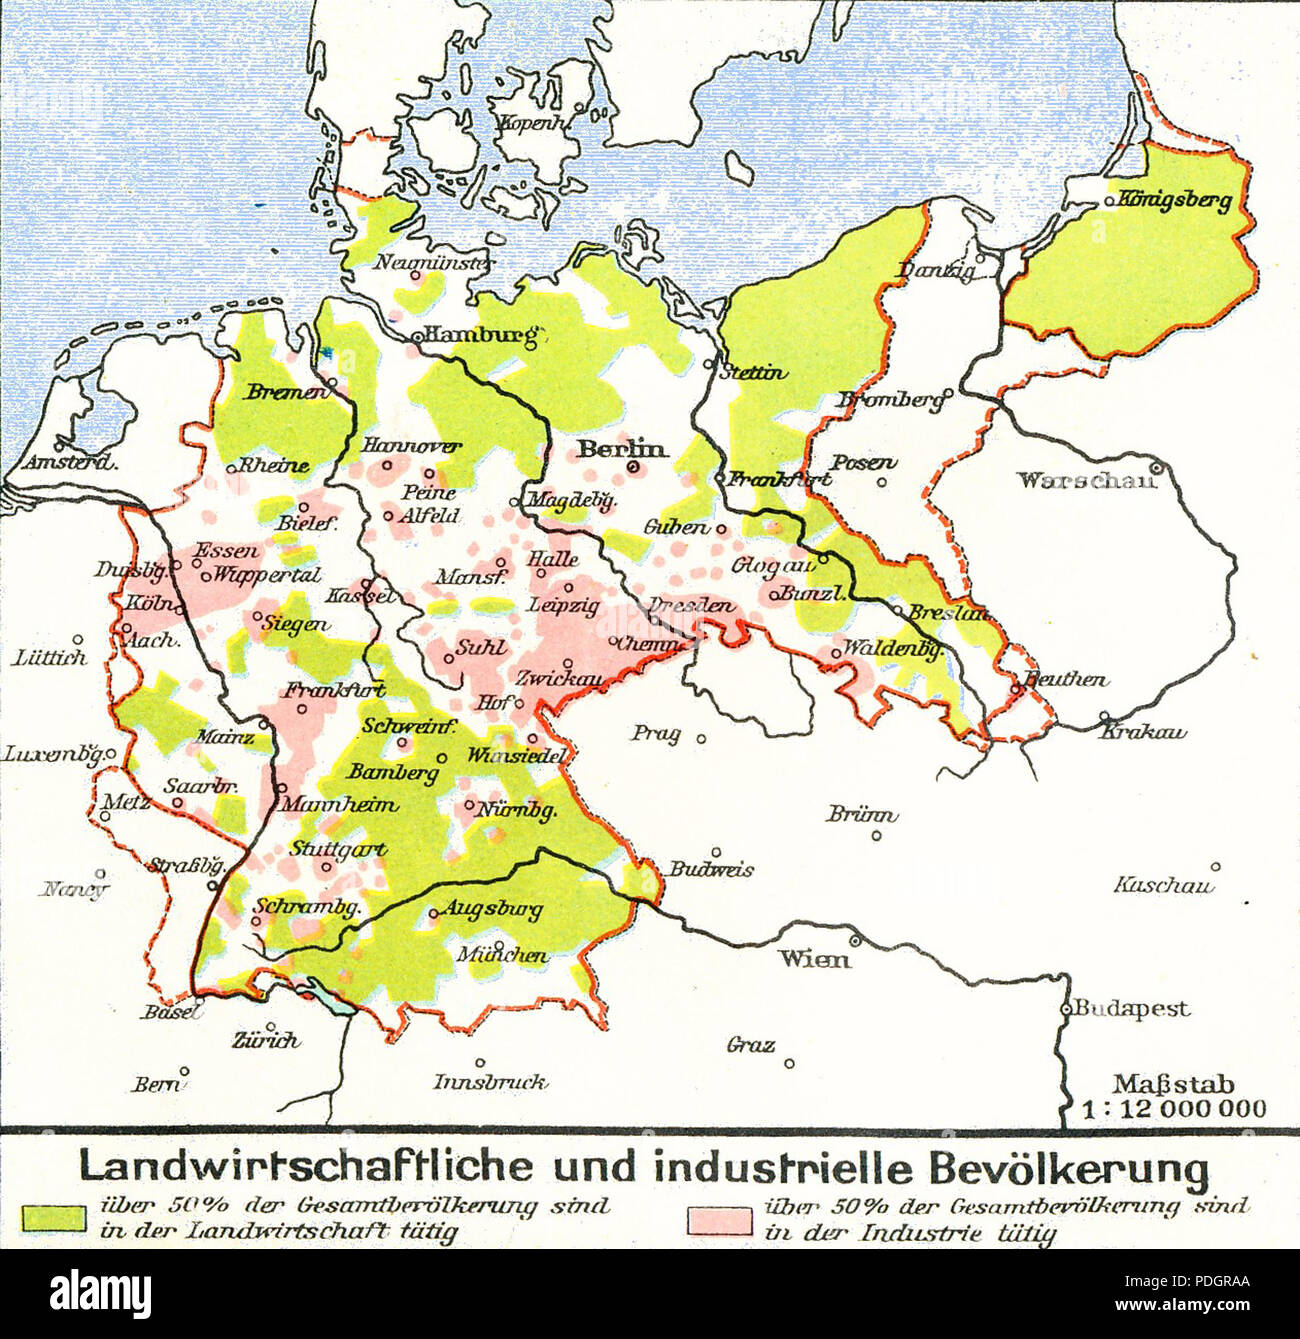 199 Lange diercke sachsen deutschland landwirtschaftliche und industrielle bevoelkerung Stock Photo